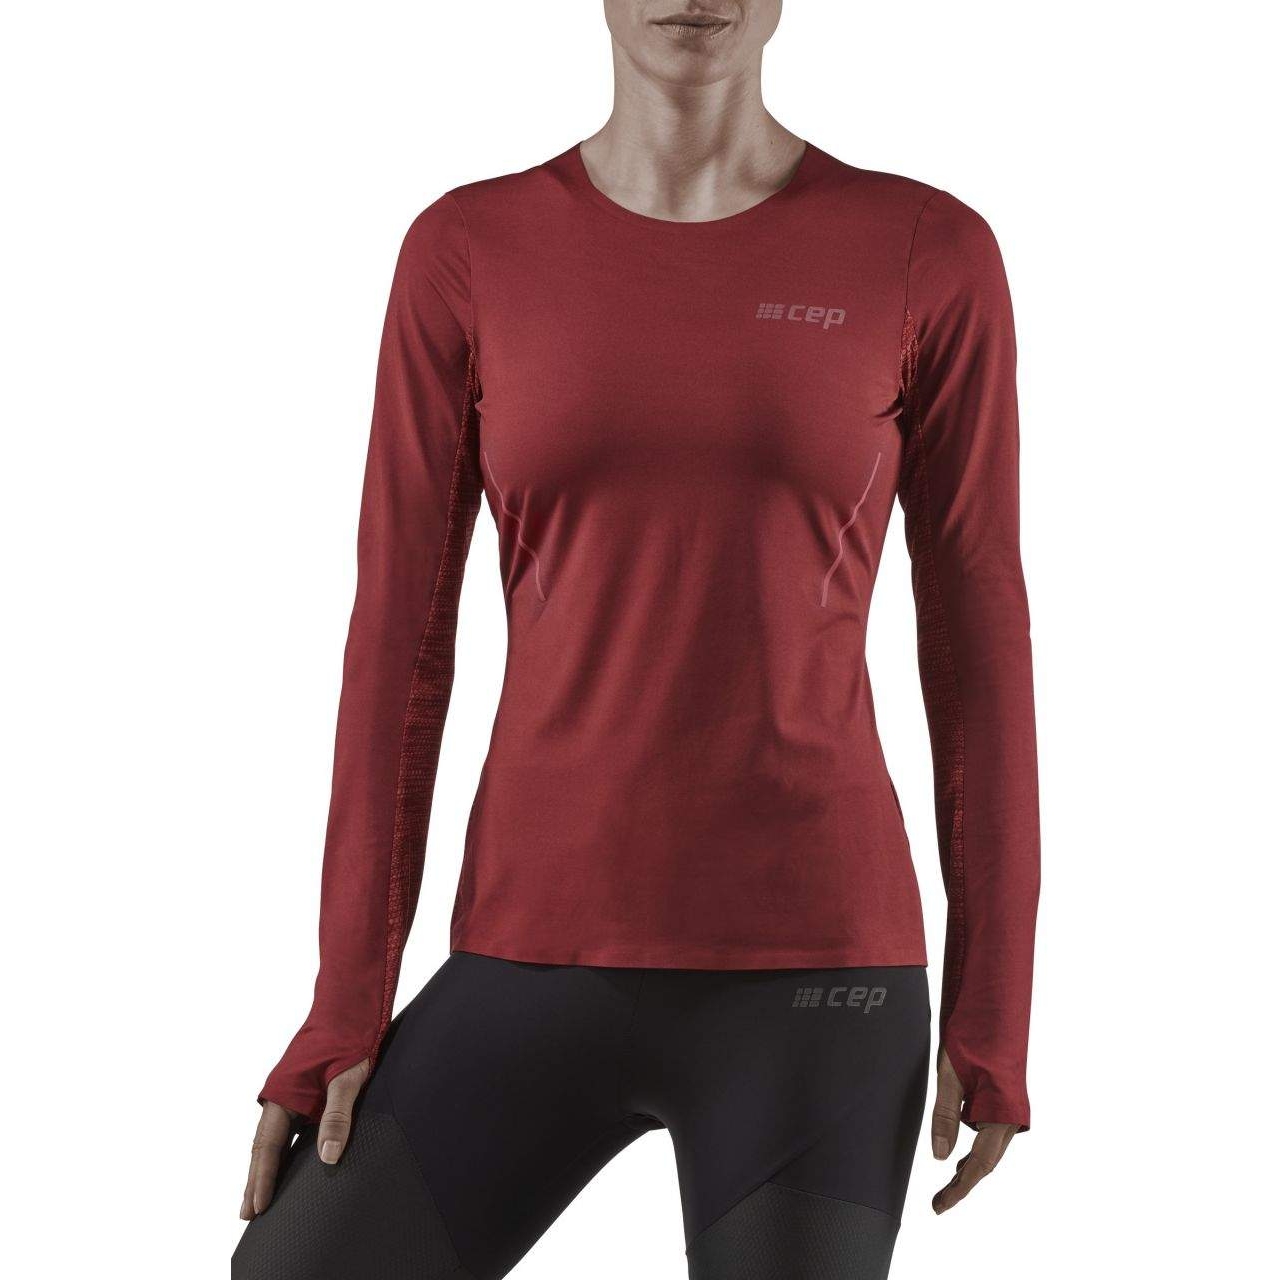 Produktbild von CEP Run Langarmshirt Damen - dark red